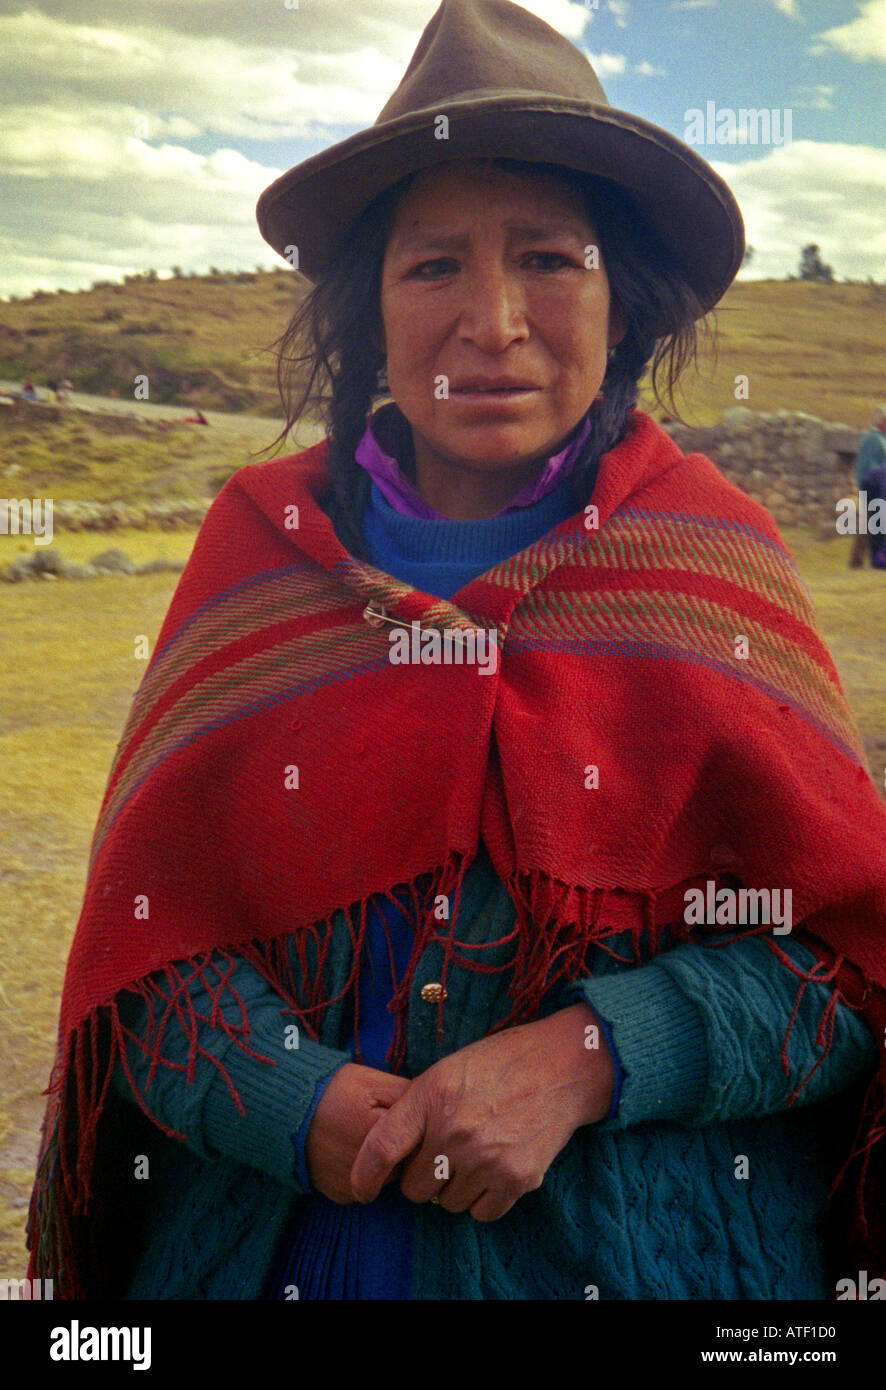 Jetant un coup d'femme autochtone dans des vêtements traditionnels colorés Valle Sagrada Vallée Sacrée Cuzco Pérou Amérique Latine du Sud Banque D'Images